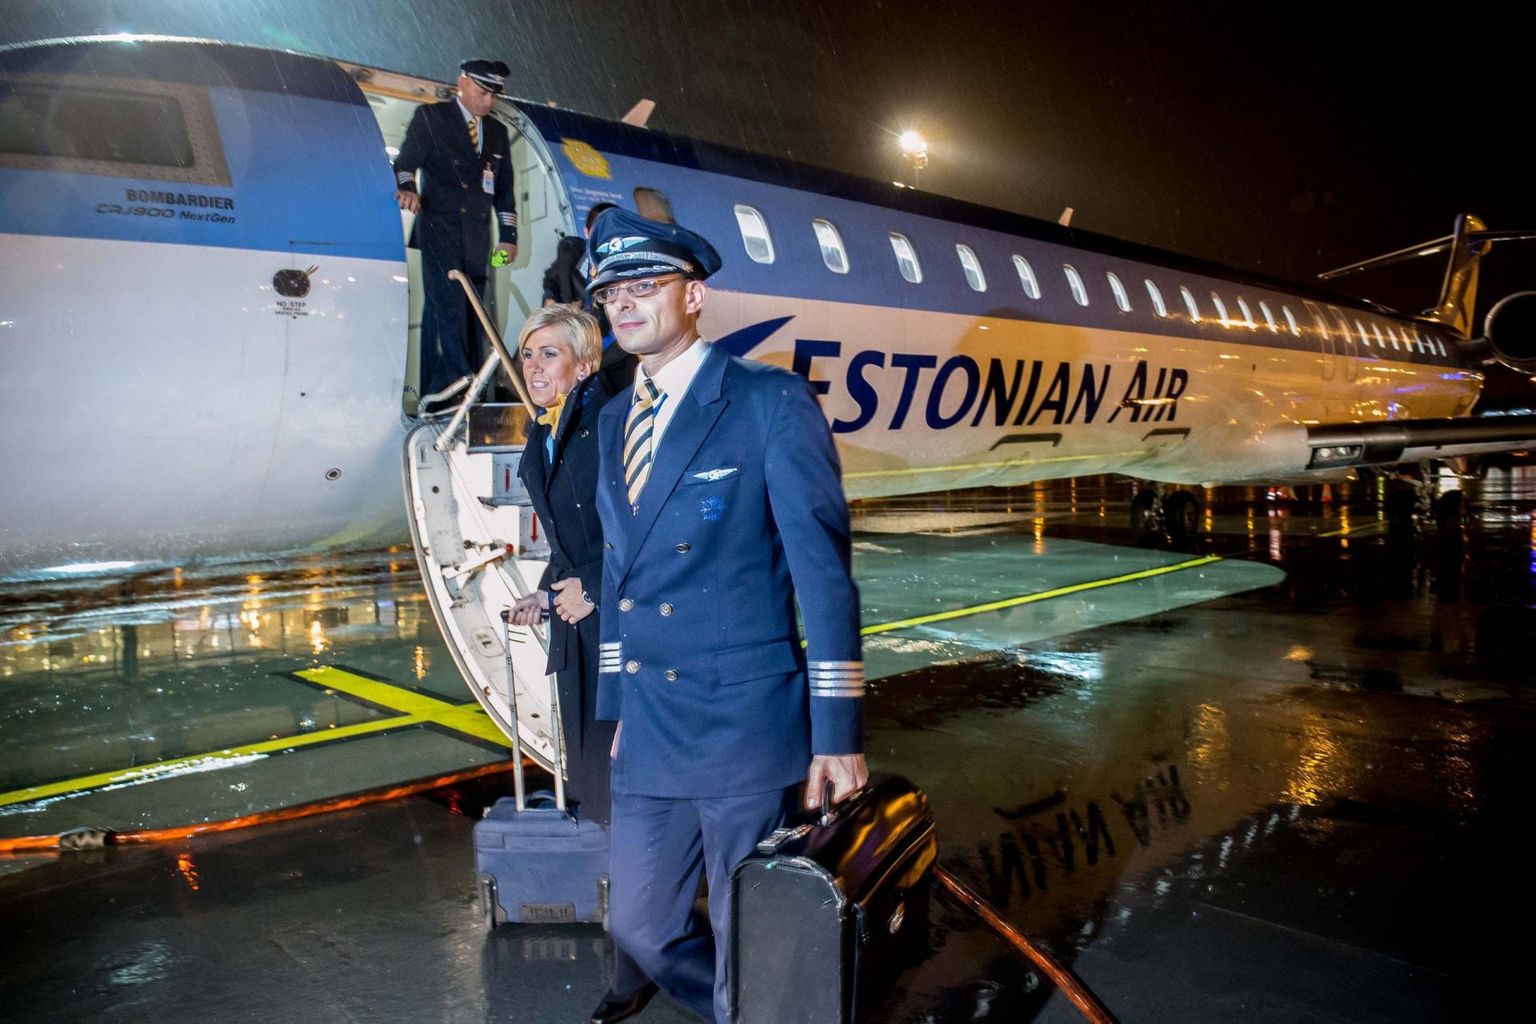 Estonian Airi viimane lend 2015. aasta 7. novembril. Pildil on lennufirma ekspiloot Immanuel Pärt.